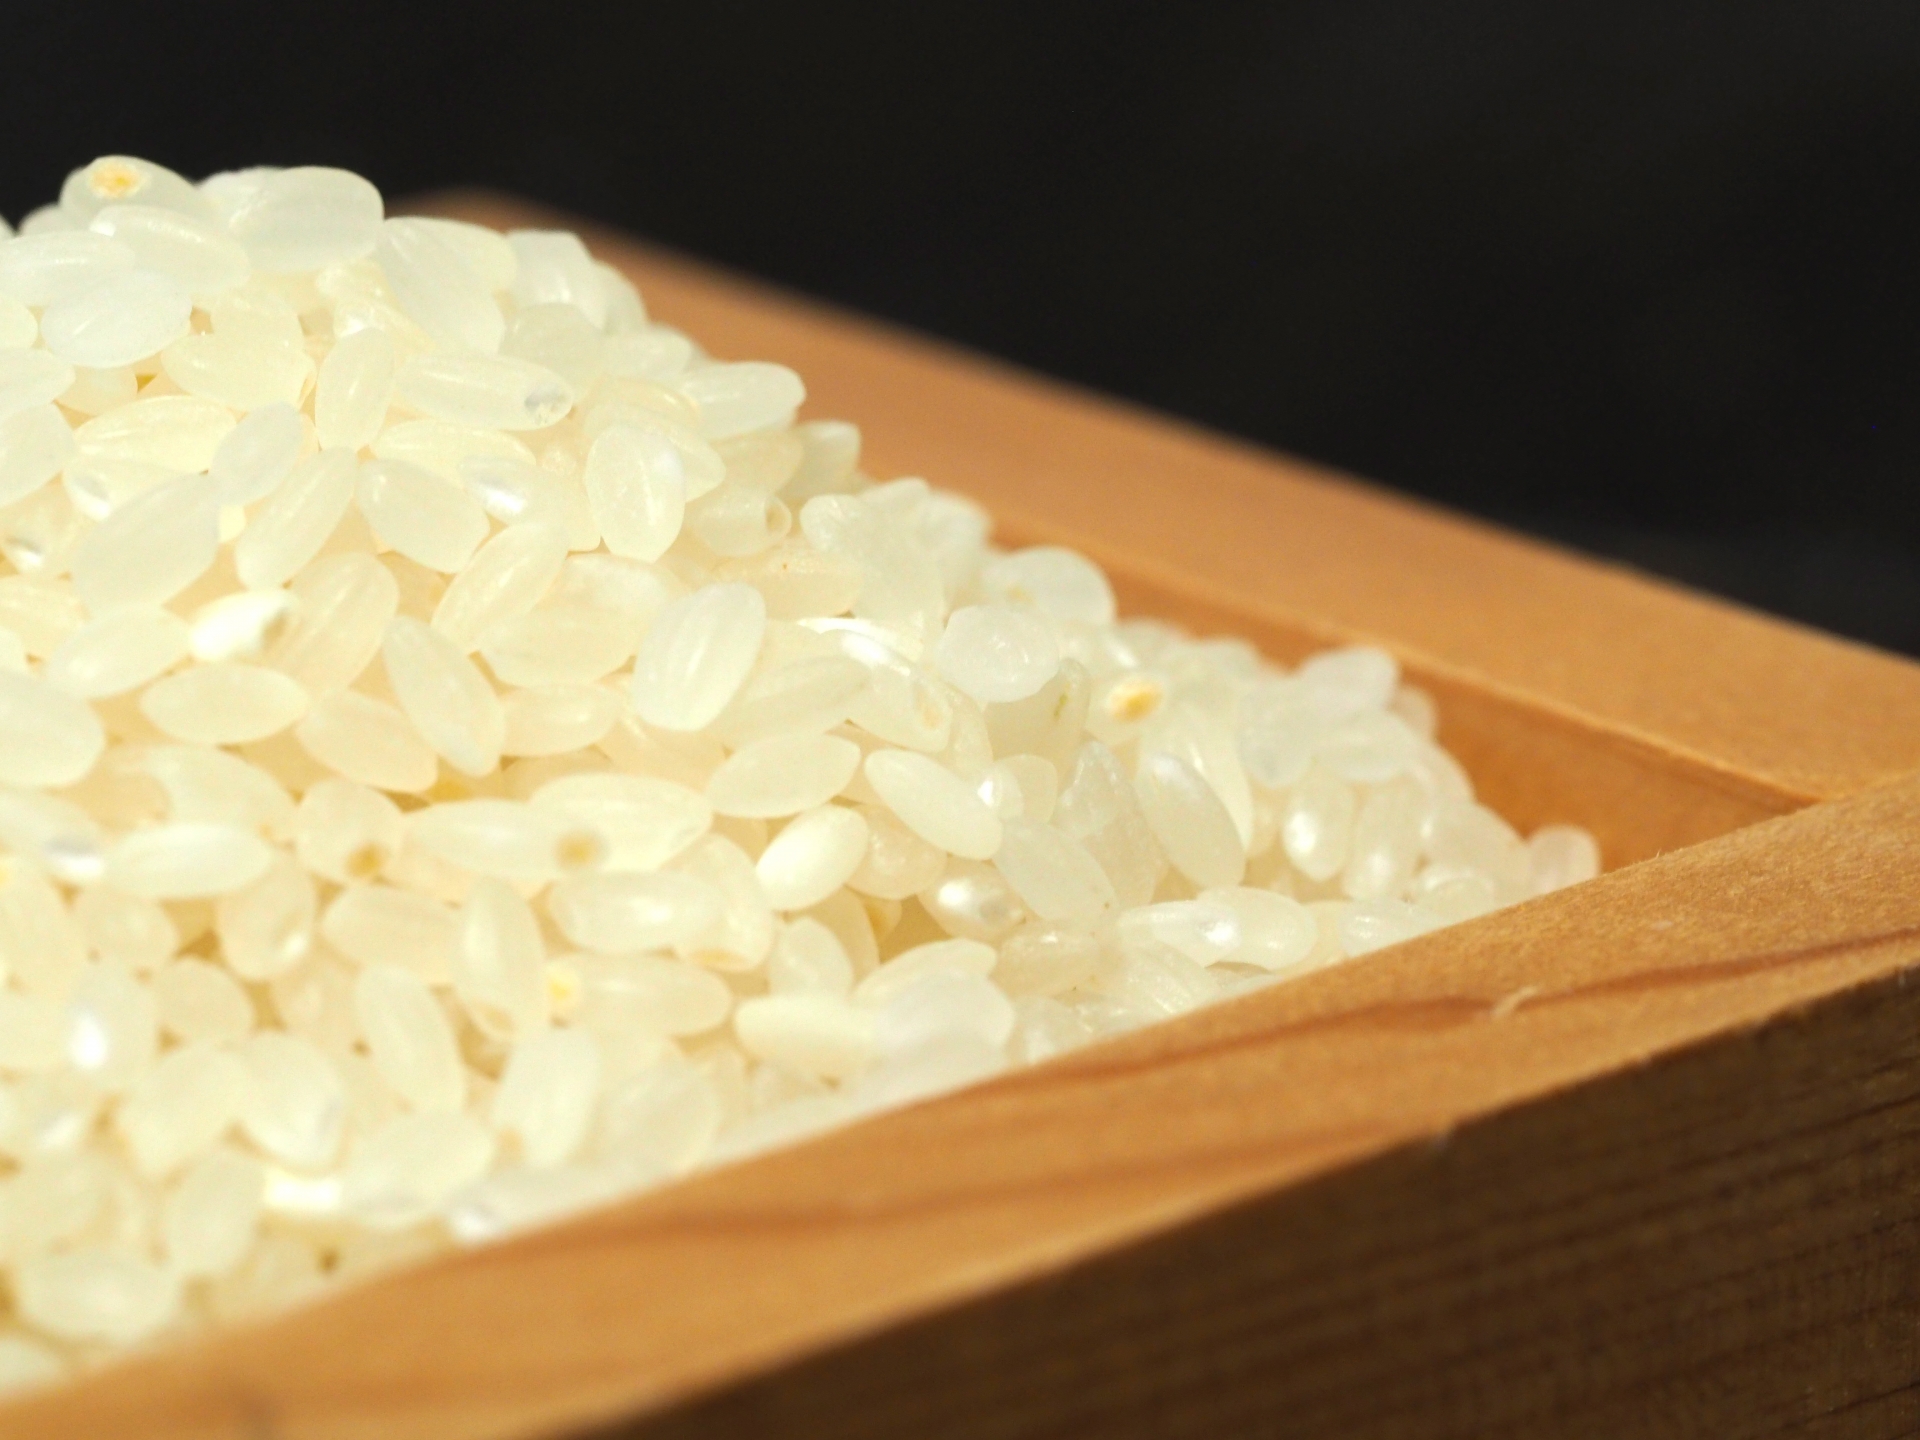 炊き込みご飯でのもち米と白米の最適な割合